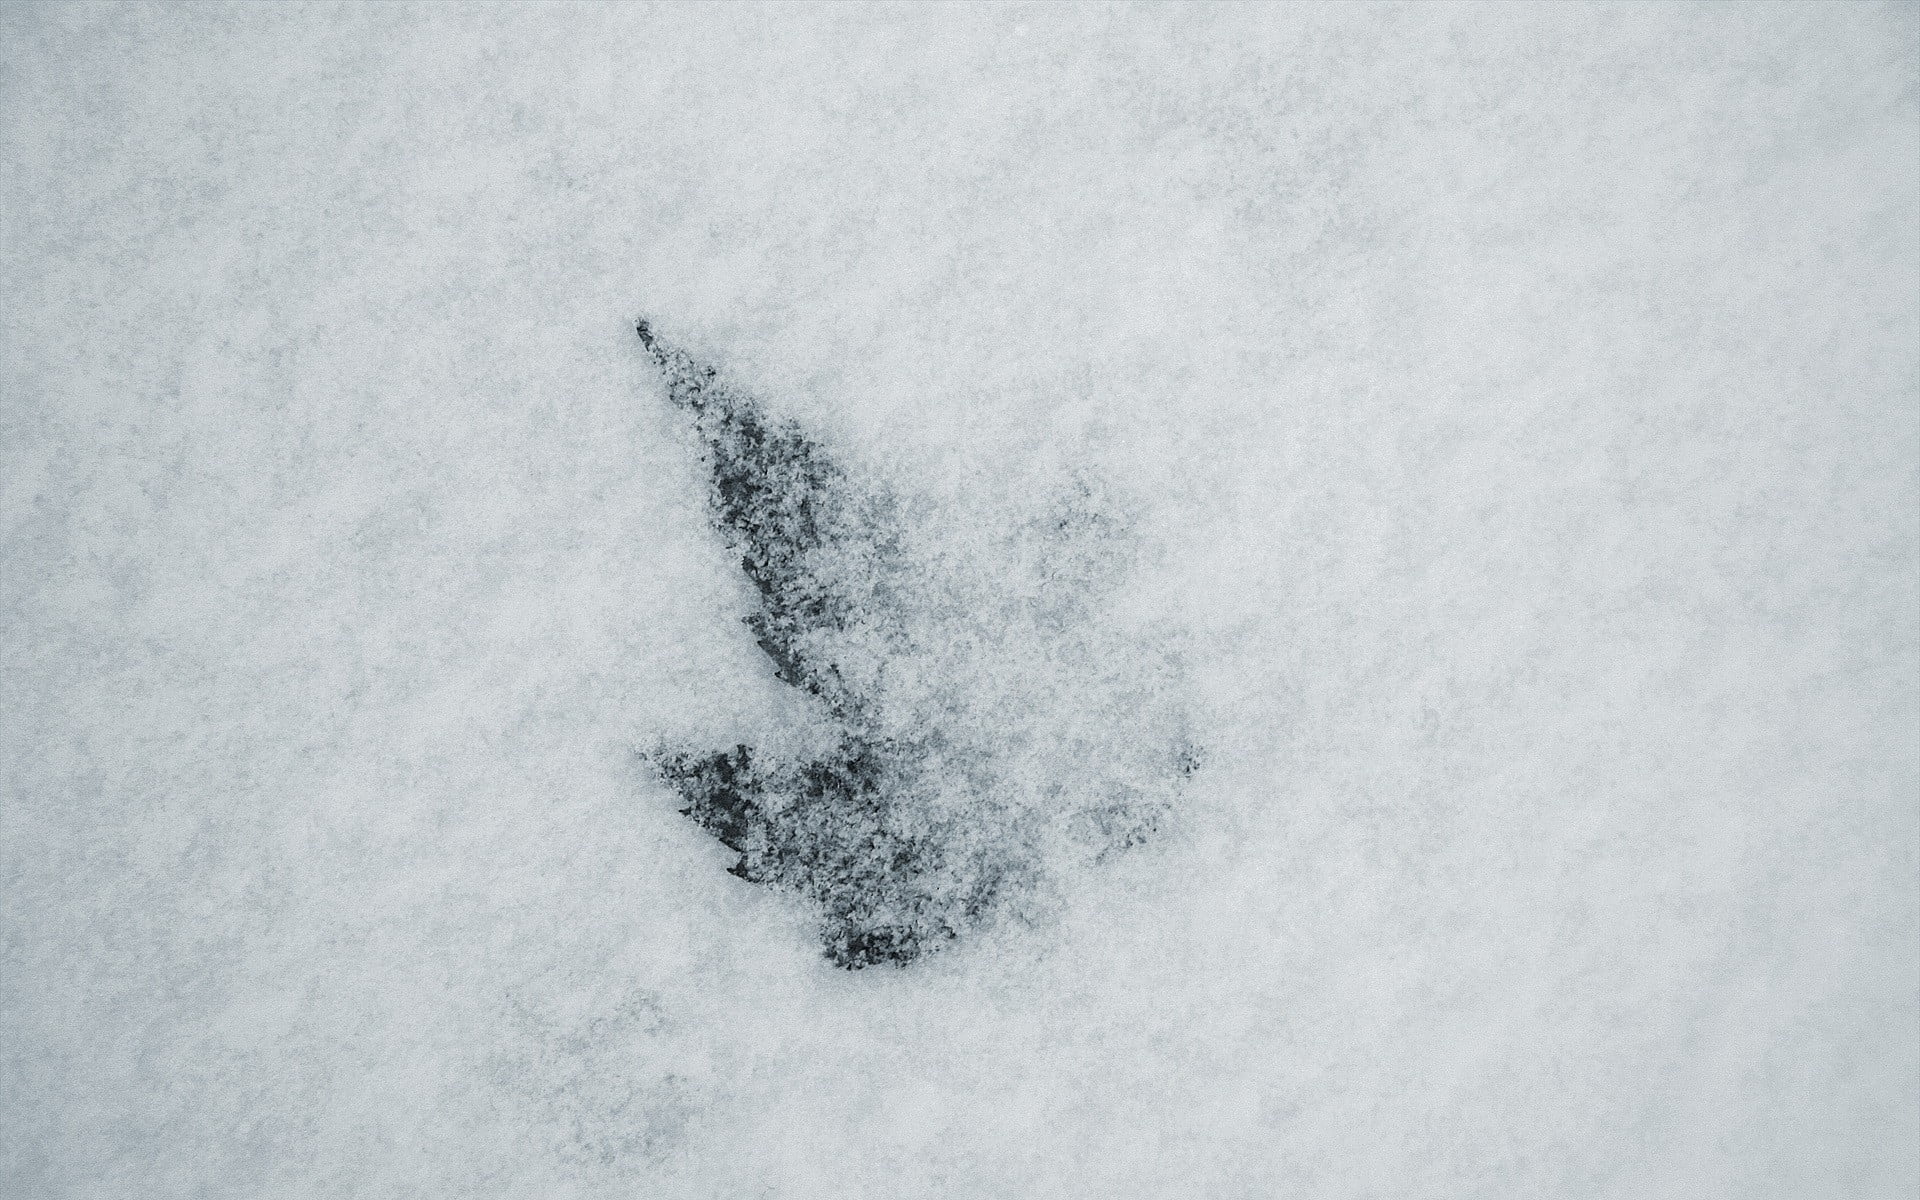 Сугробы листьев. Снег текстура. Следы на снегу. Обои снегопад. Снег на белом фоне.